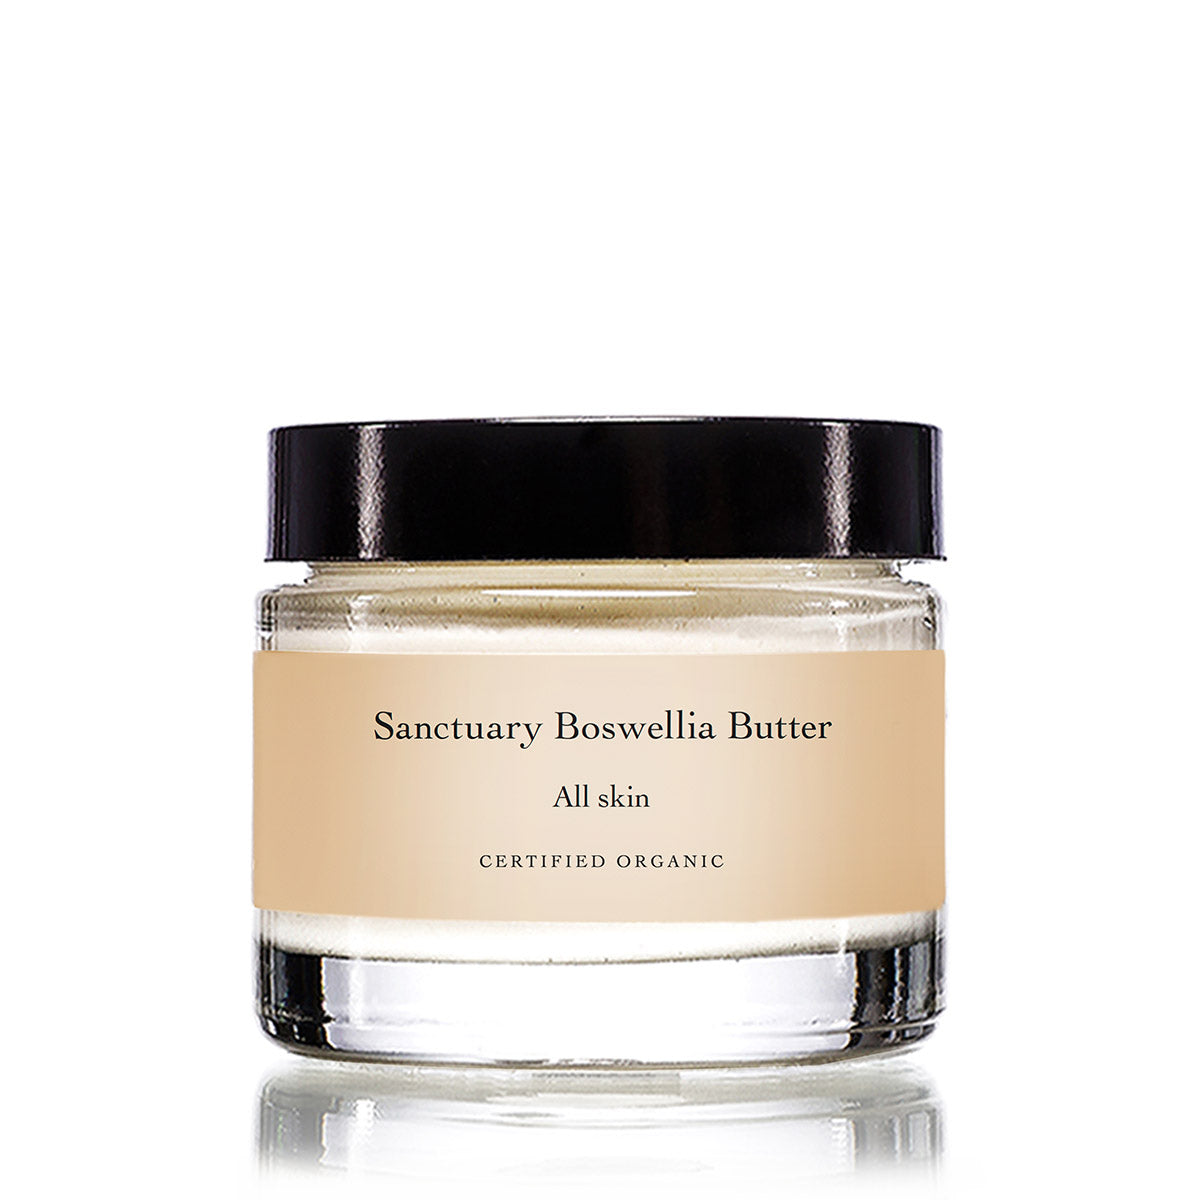 Sanctuary Boswellia Butter